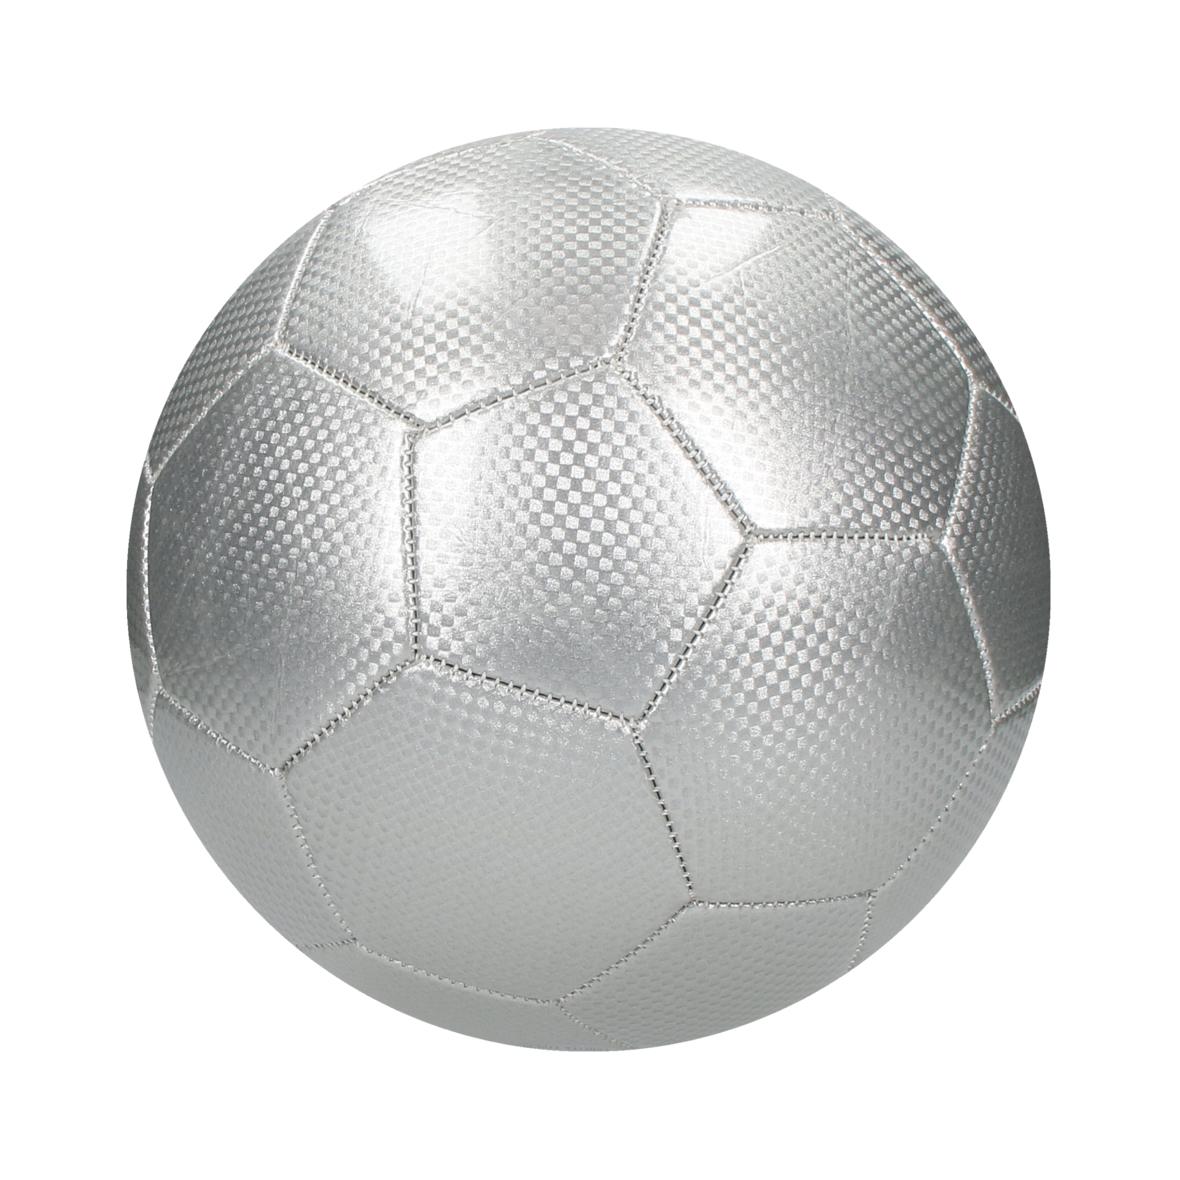 Ballon de football 6 panneaux à 3 couches personnalisable